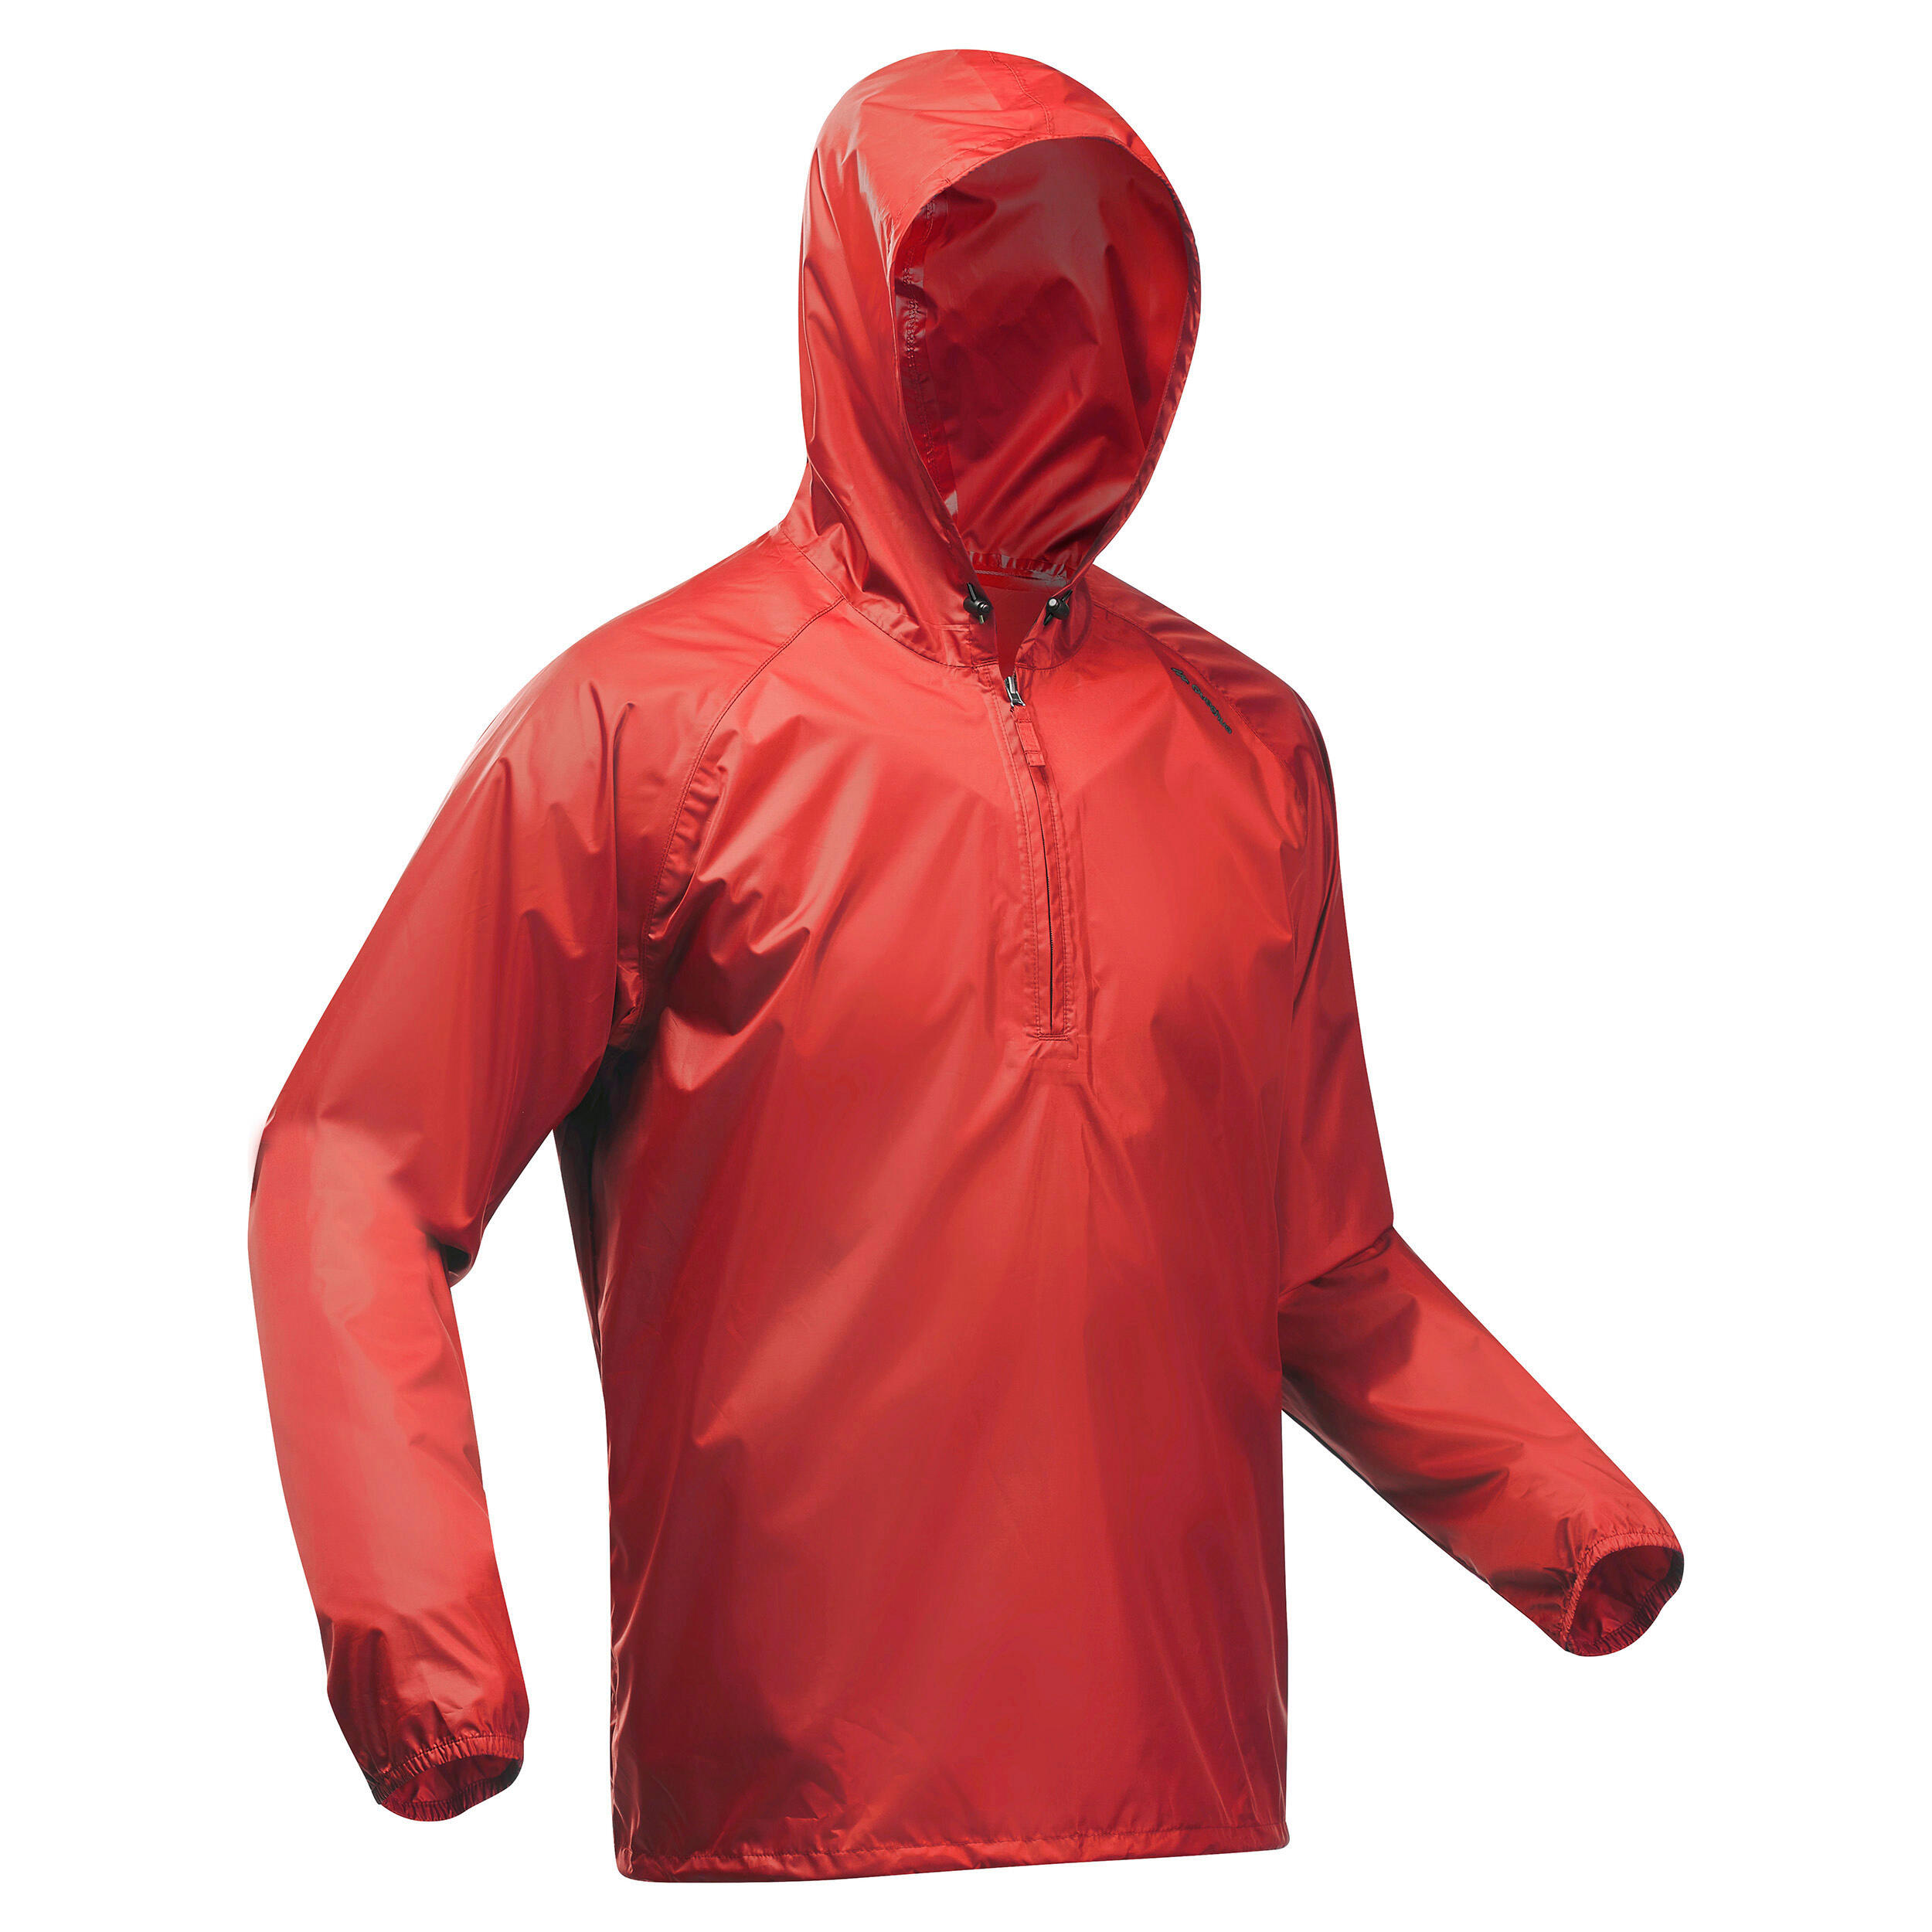 QUECHUA Men's Windproof and Water-repellent Hiking Jacket - Raincut 1/2 Zip